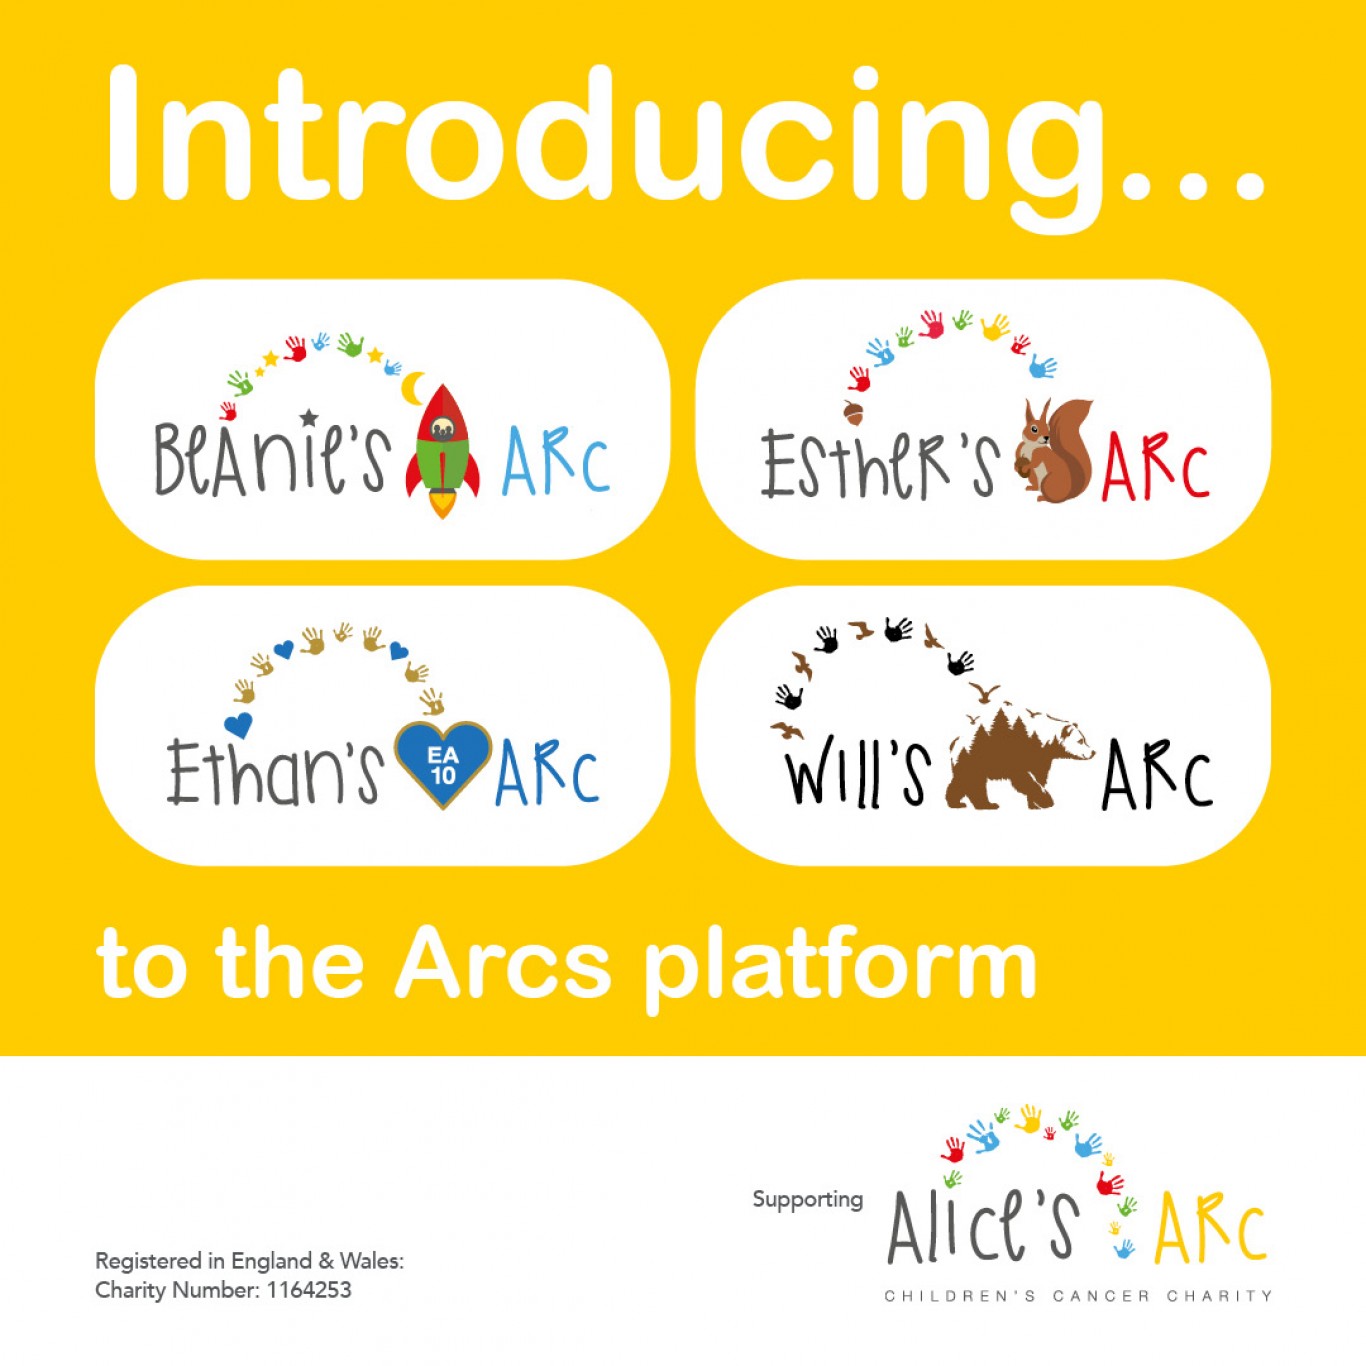 The Arcs Platform